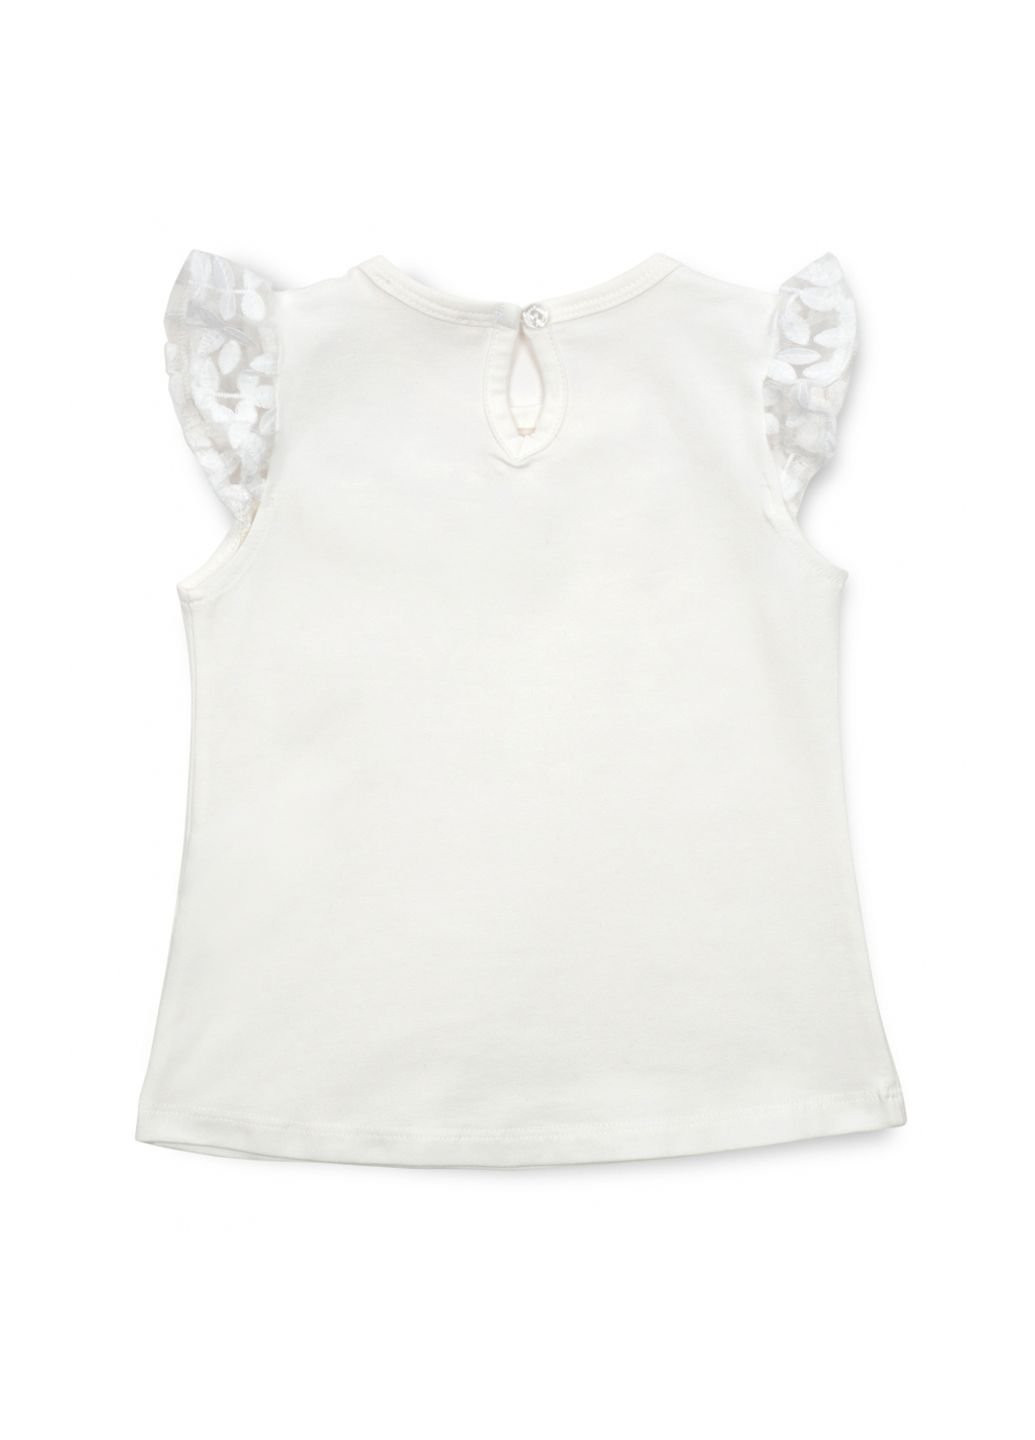 Белая летняя футболка детская с кружевом (12904-110g-cream) Breeze